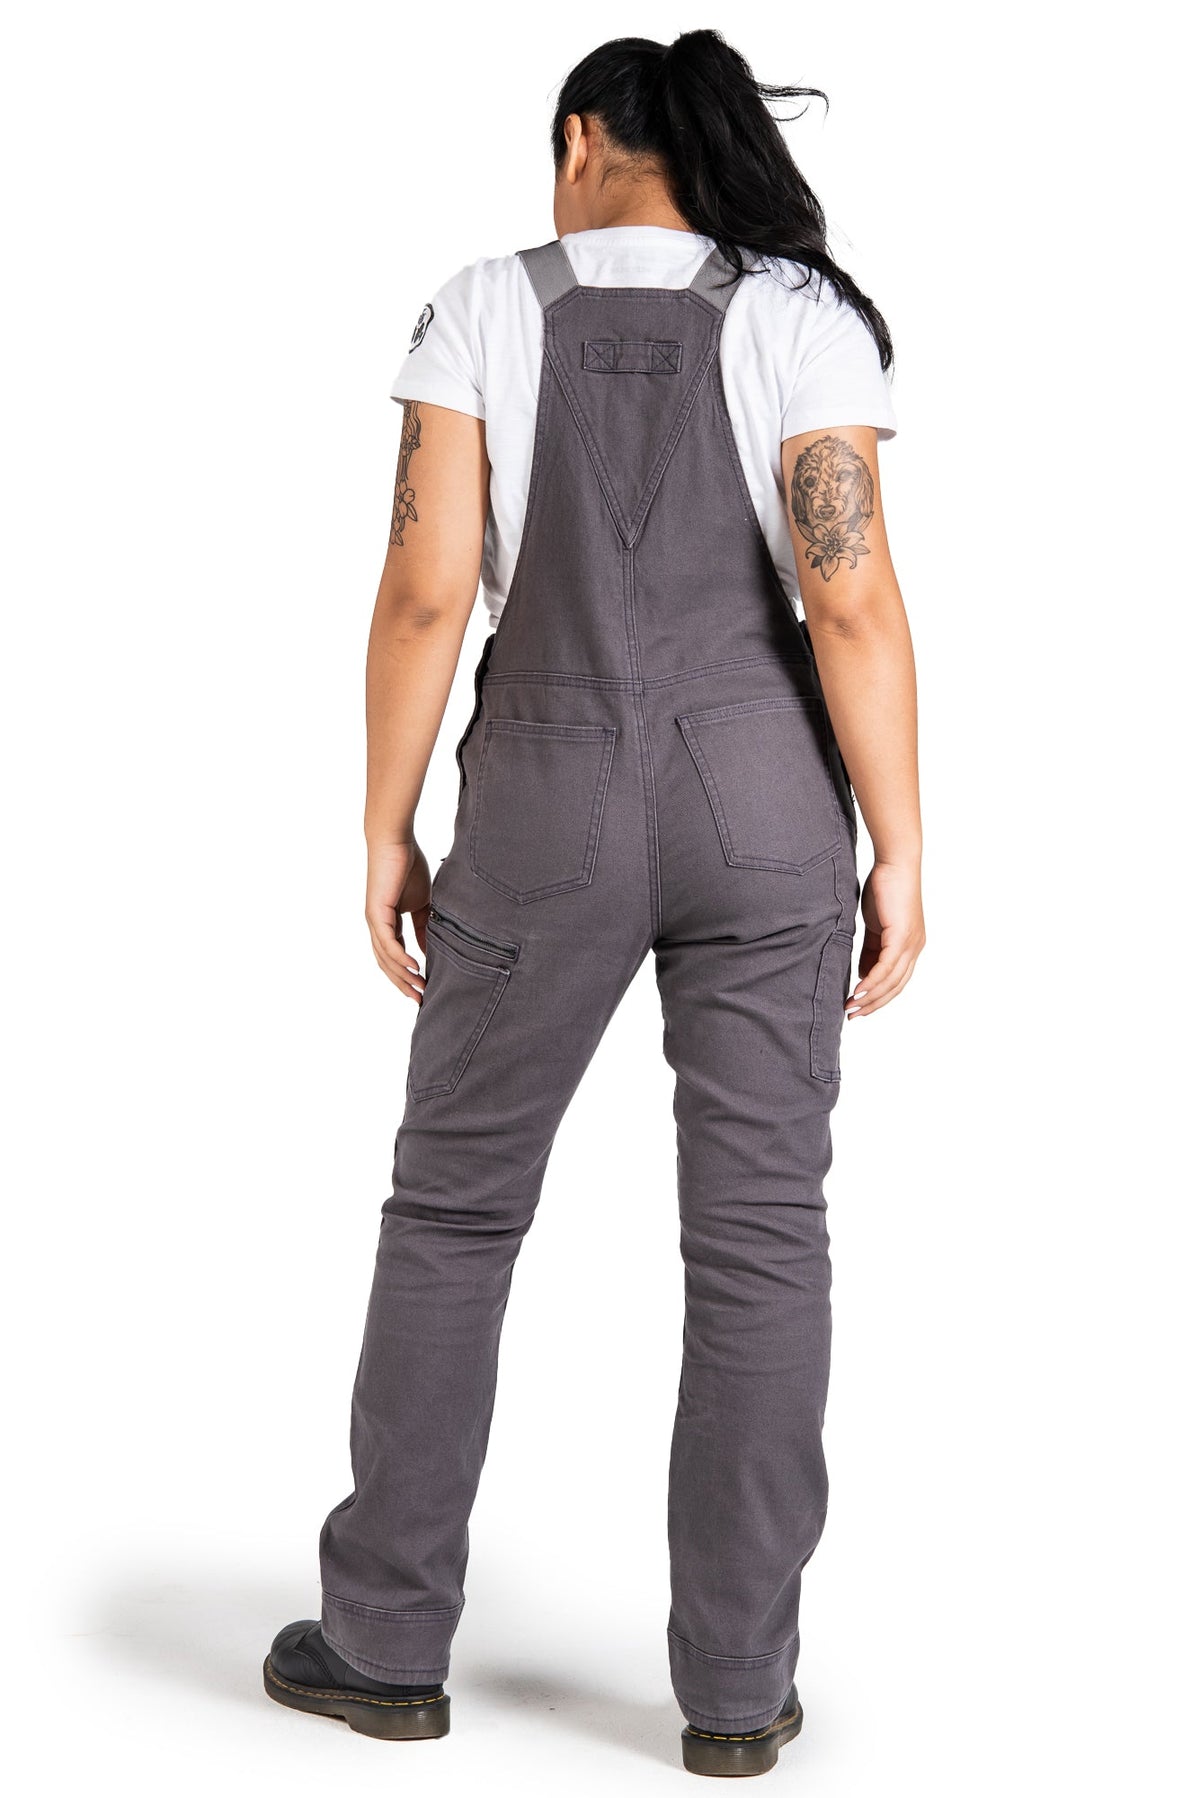 Dovetail Workwear Women&#39;s Freshly Overall_Dark Grey - Work World - Workwear, Work Boots, Safety Gear